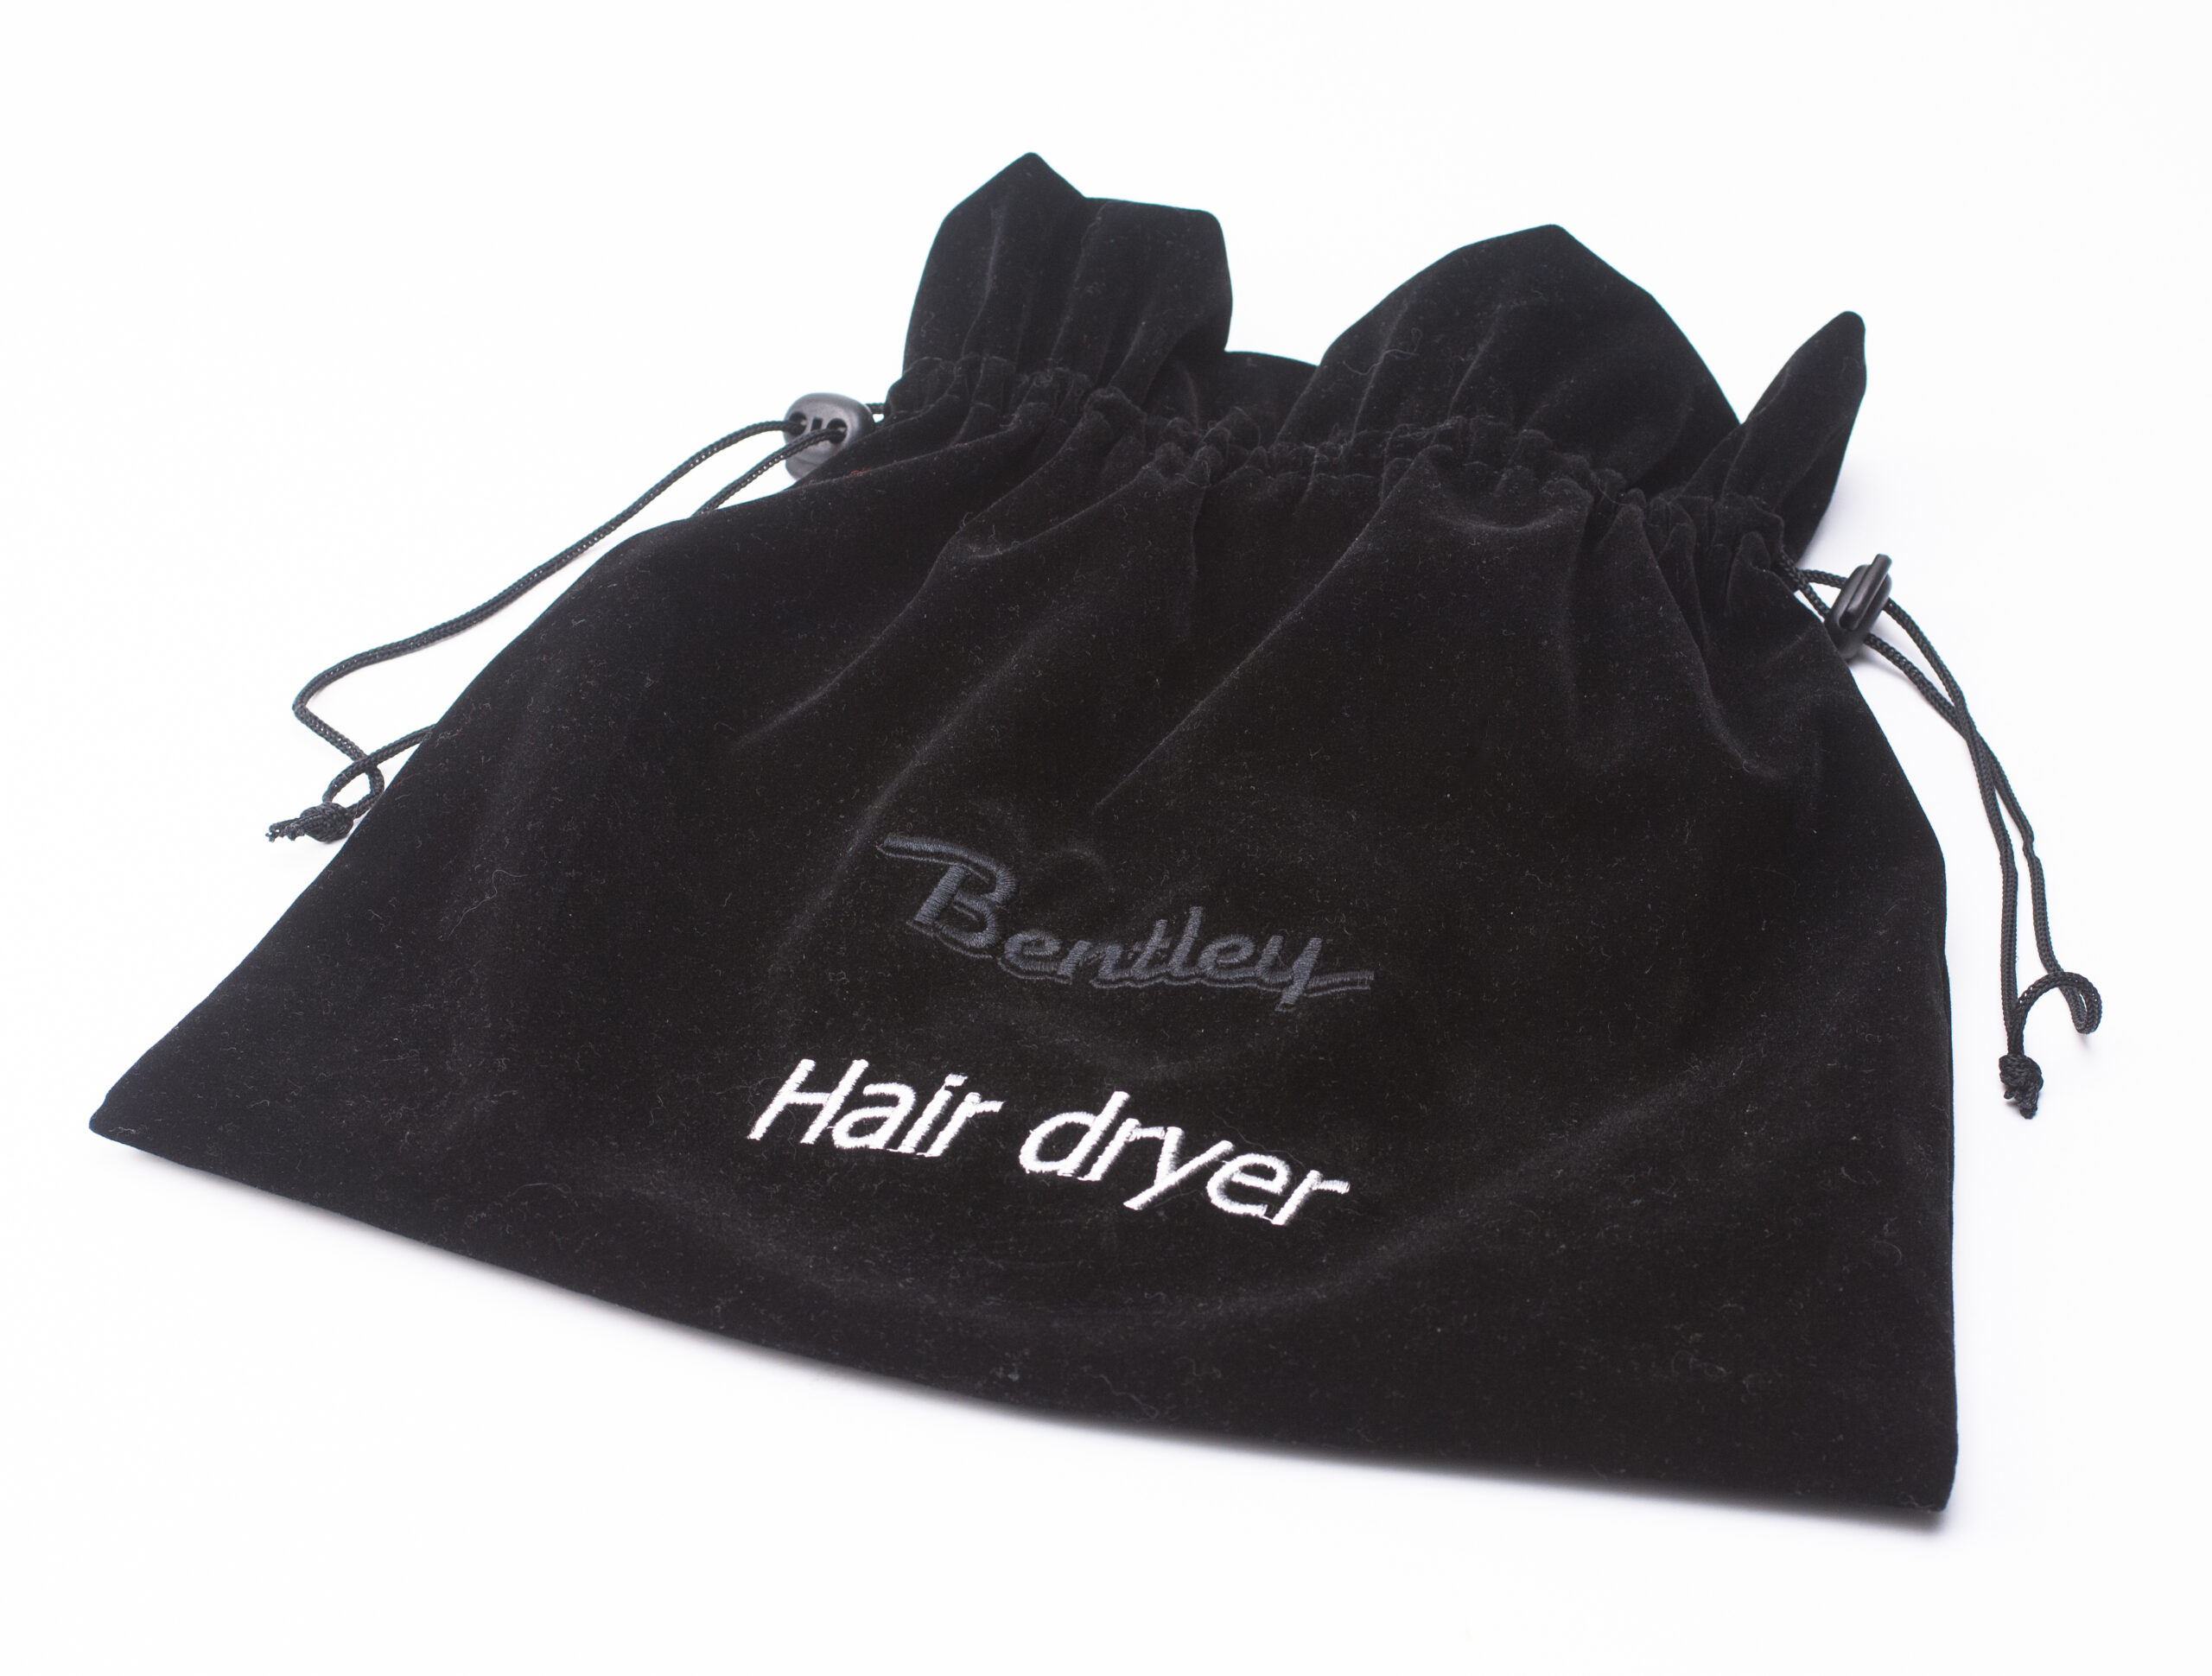 Hairdryer bag